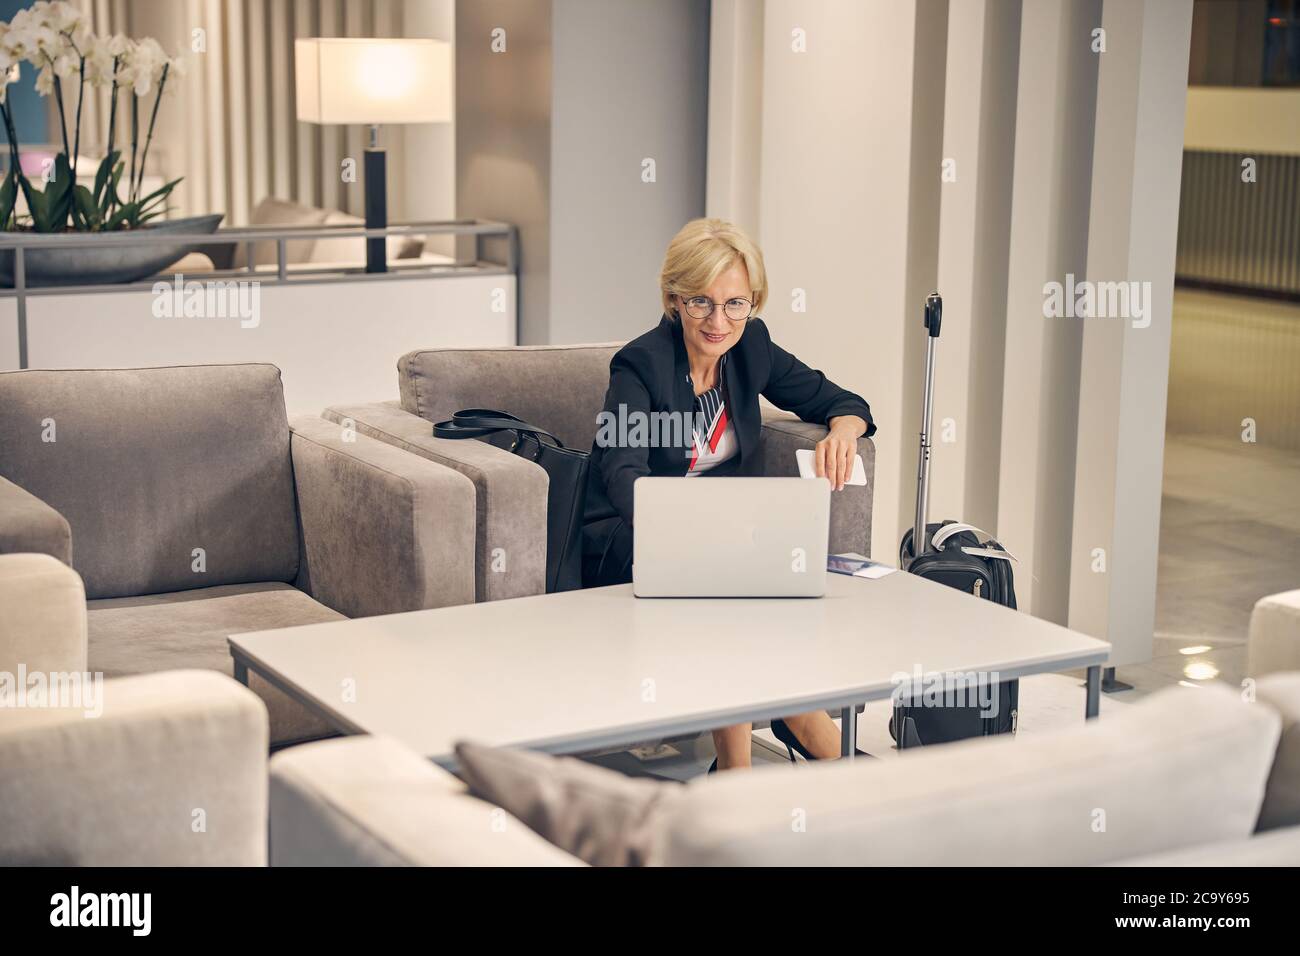 Femme charmante utilisant un ordinateur portable avant un voyage d'affaires Banque D'Images